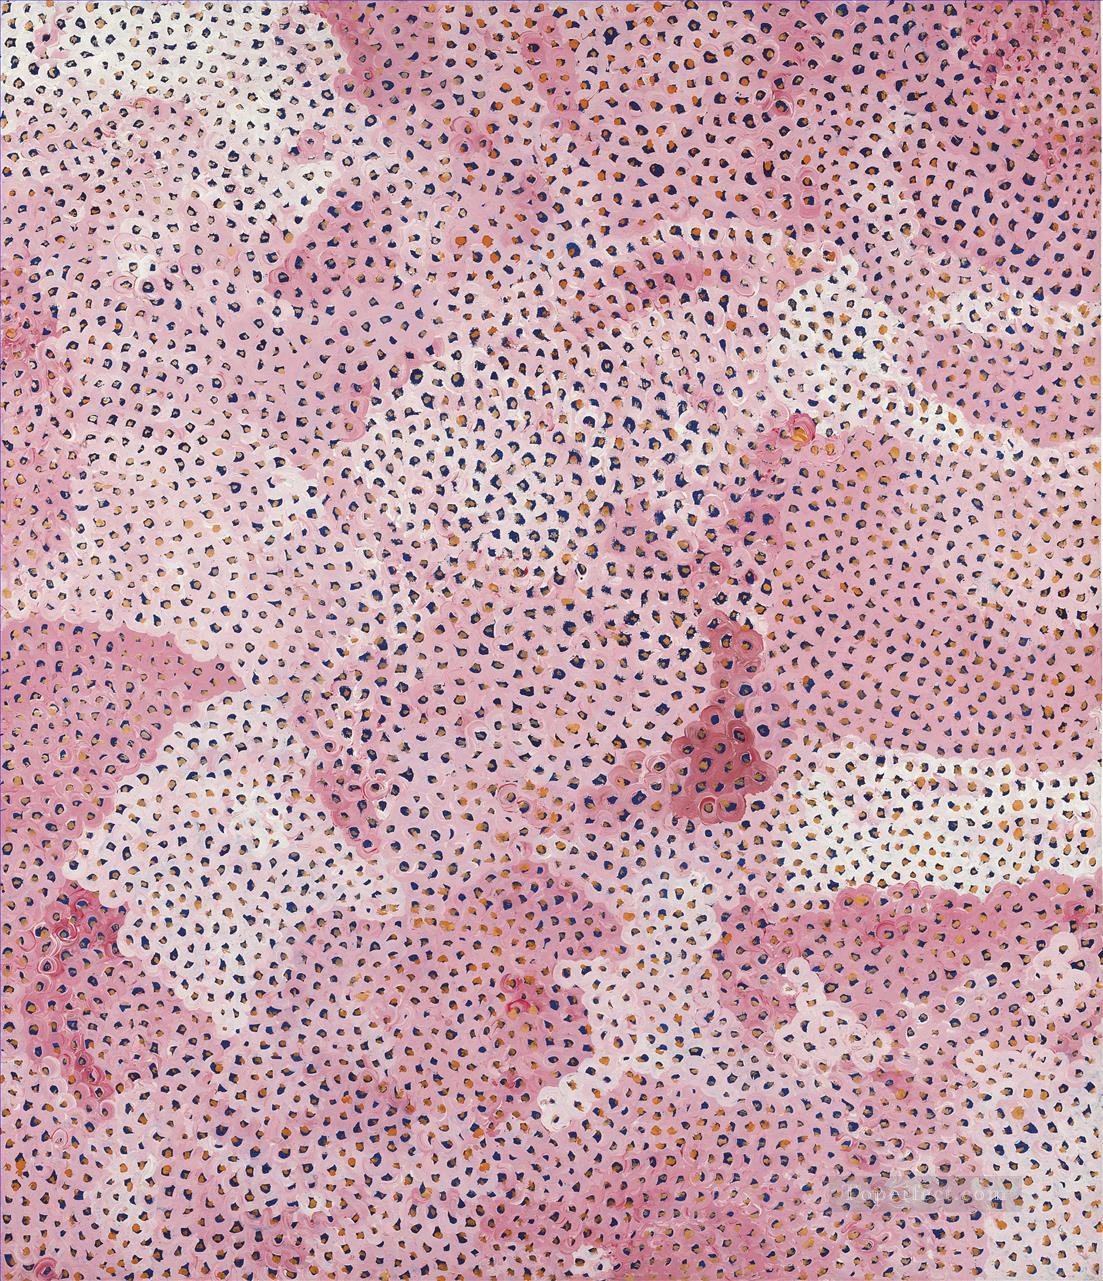 Infinity Nets pink Yayoi Kusama Pop art minimalism feminist Oil Paintings